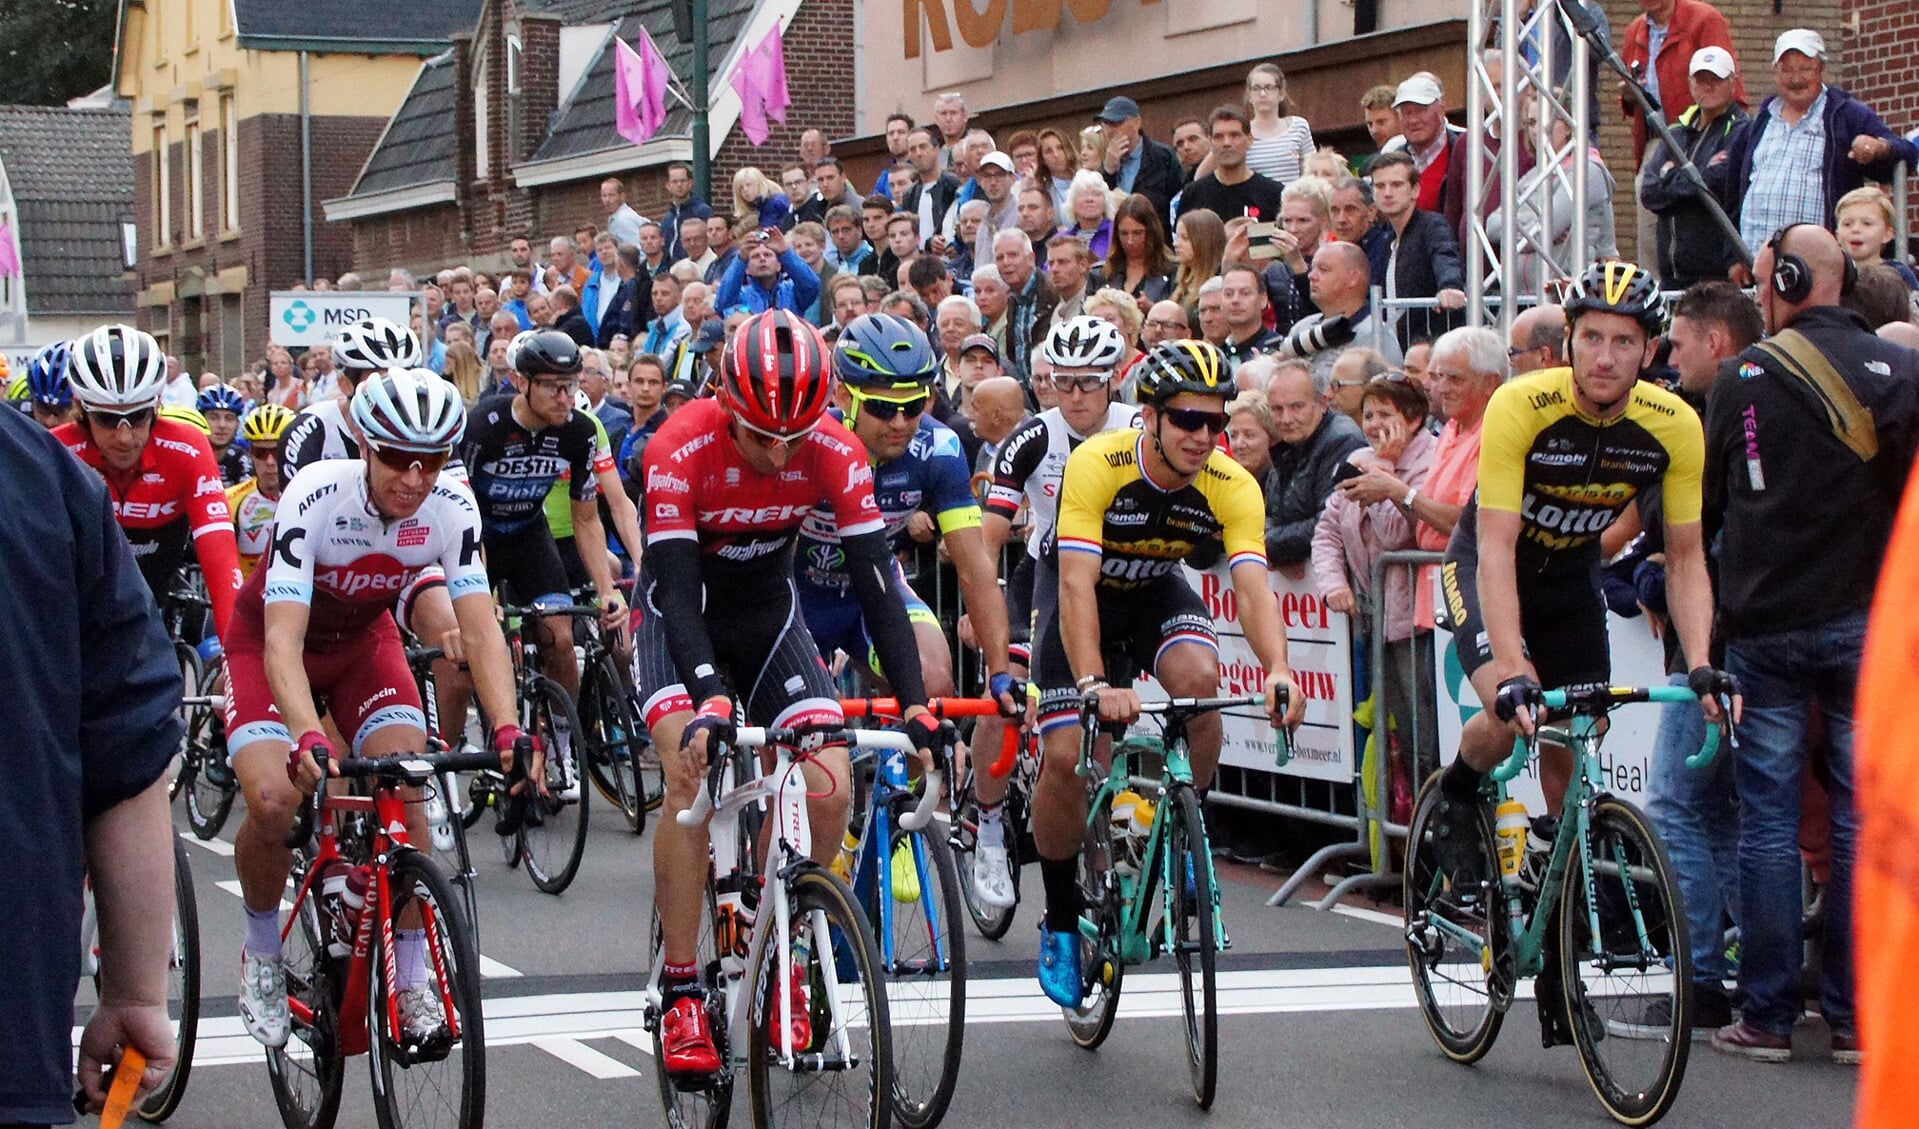 Vandaag is bekend gemaakt dat het bekende Boxmeerse wielerevenement Daags na de Tour dit jaar alsnog doorgaat.